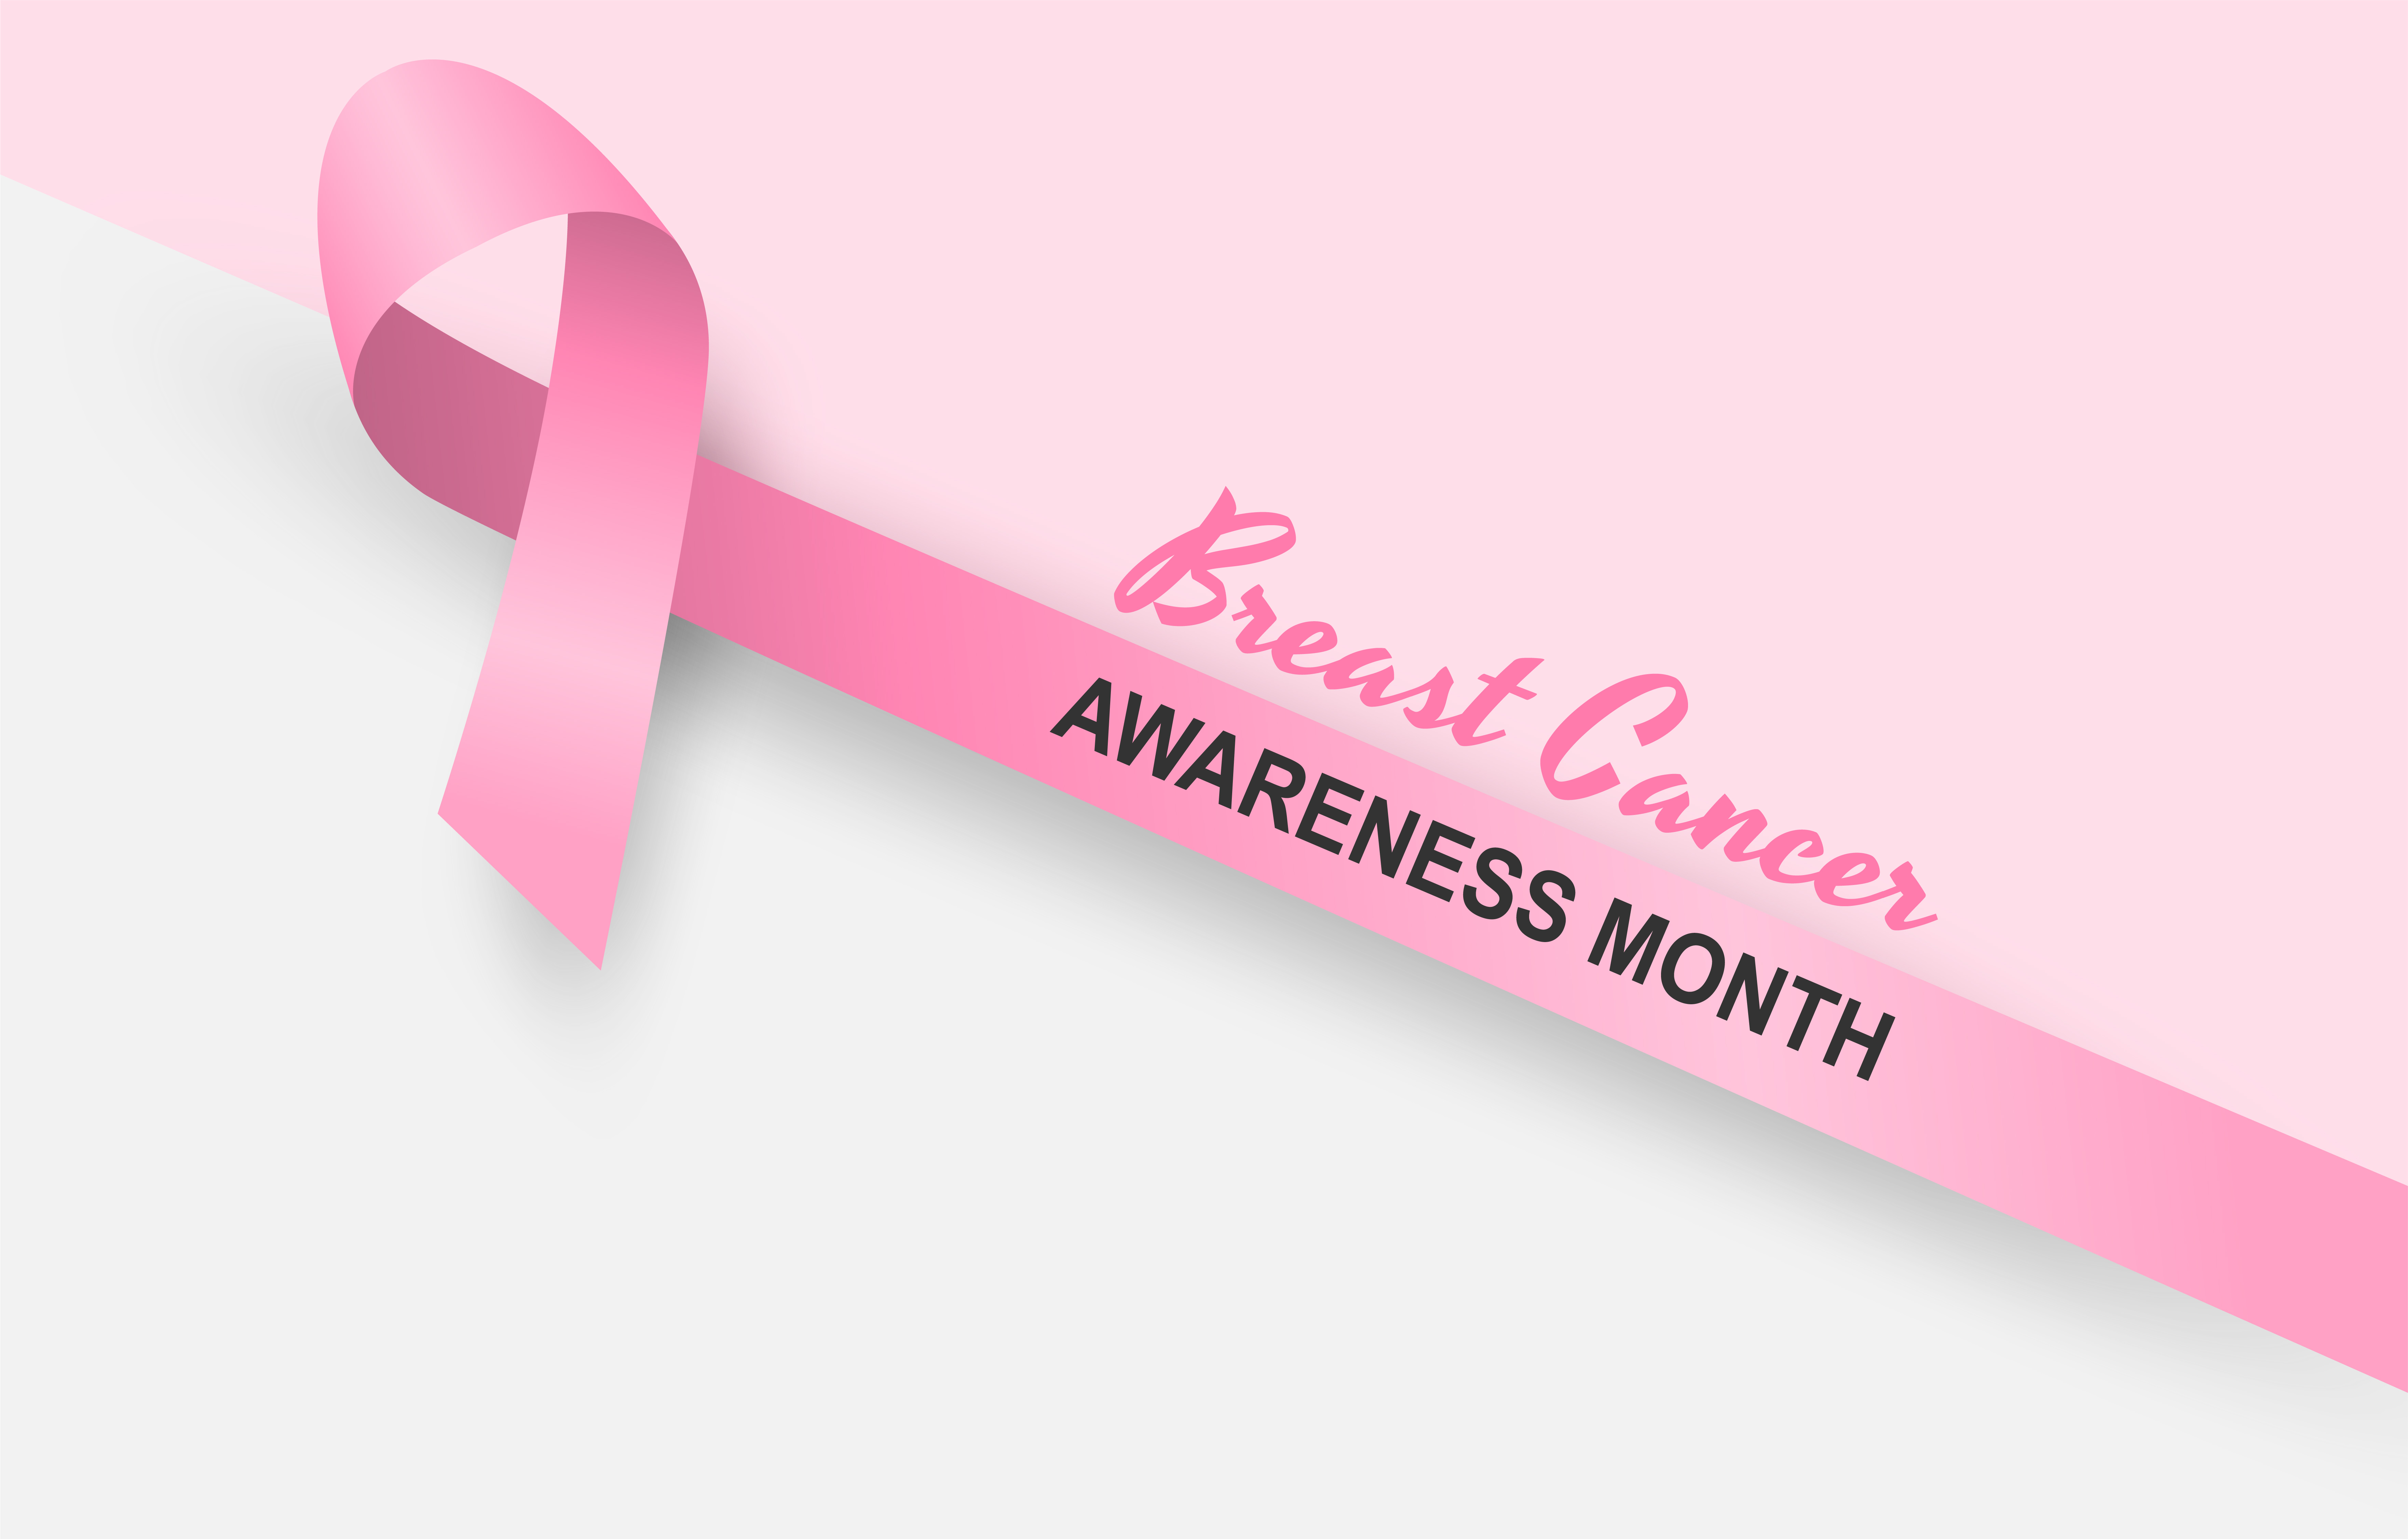 Huy hiệu màu hồng chéo không chỉ là một biểu tượng mà còn là thước đo sức khỏe của chị em phụ nữ. Thiết kế nhận thức ung thư vú với huy hiệu này là một sự kiện mang tính lịch sử và bạn không thể bỏ qua!